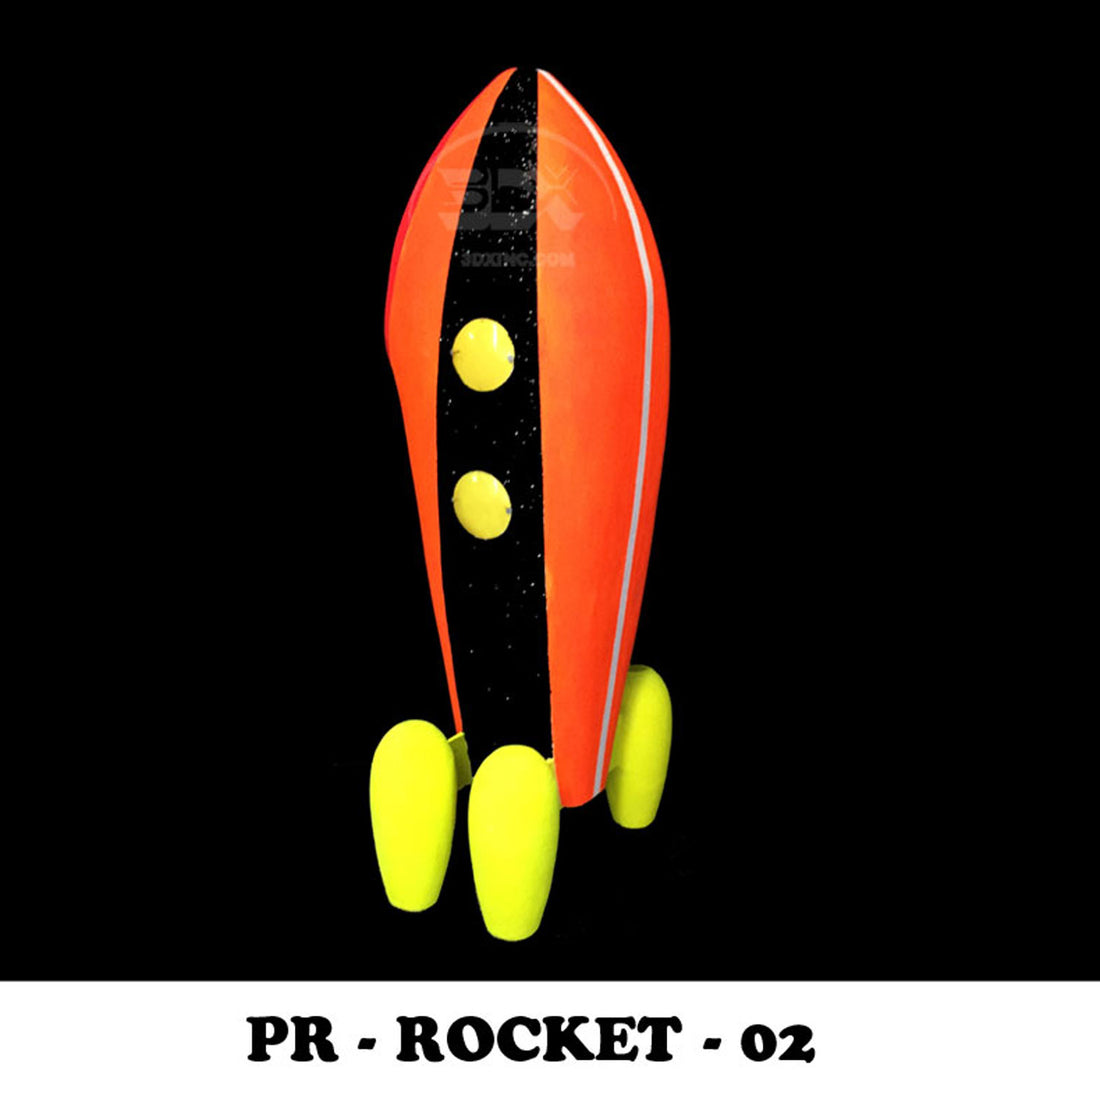 PR - ROCKET - 02